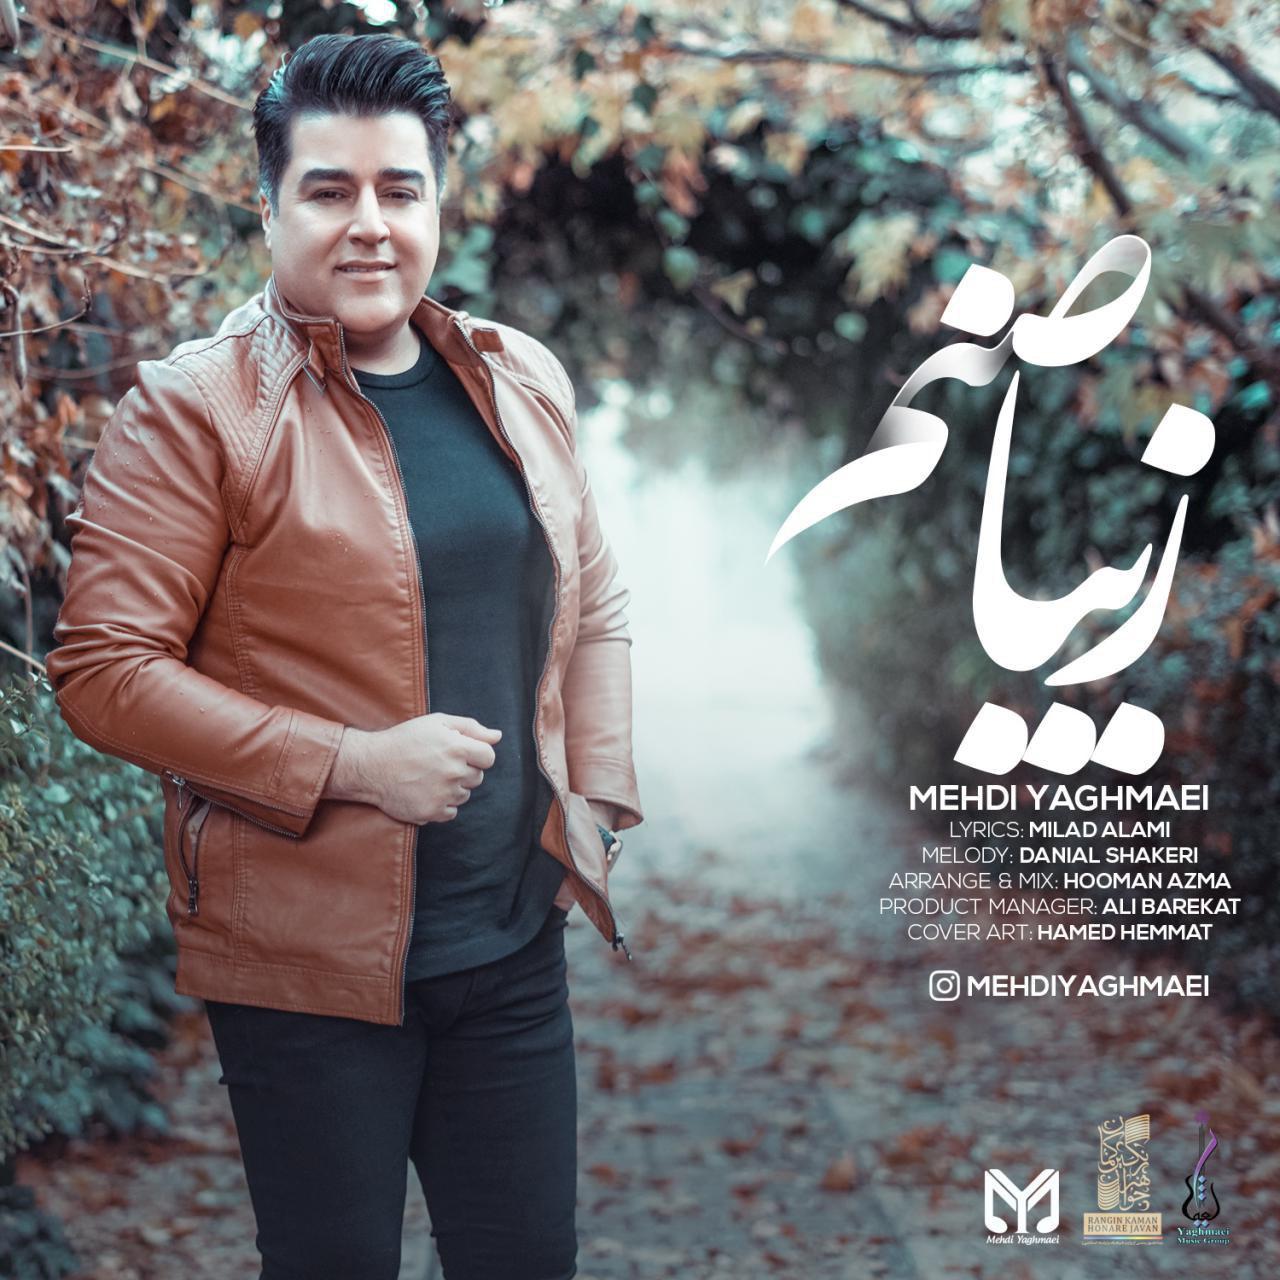  دانلود آهنگ جدید مهدی یغمایی - زیبا صنم | Download New Music By Mehdi Yaghmaei - Ziba Sanam